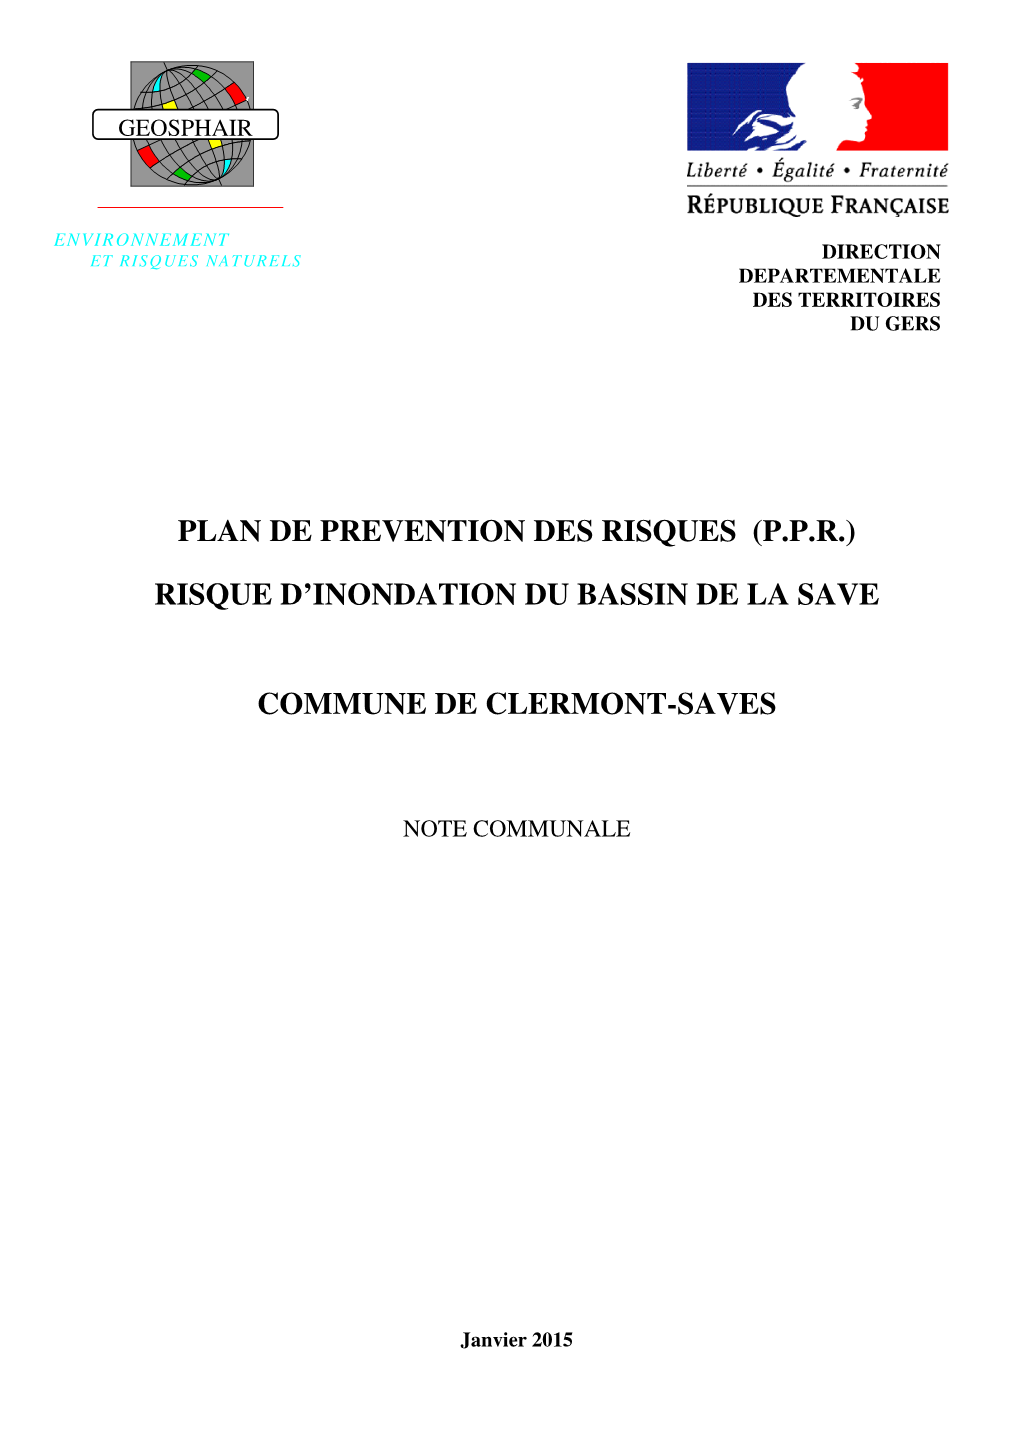 Plan De Prevention Des Risques (P.P.R.) Risque D'inondation Du Bassin De La Save Commune De Clermont-Saves